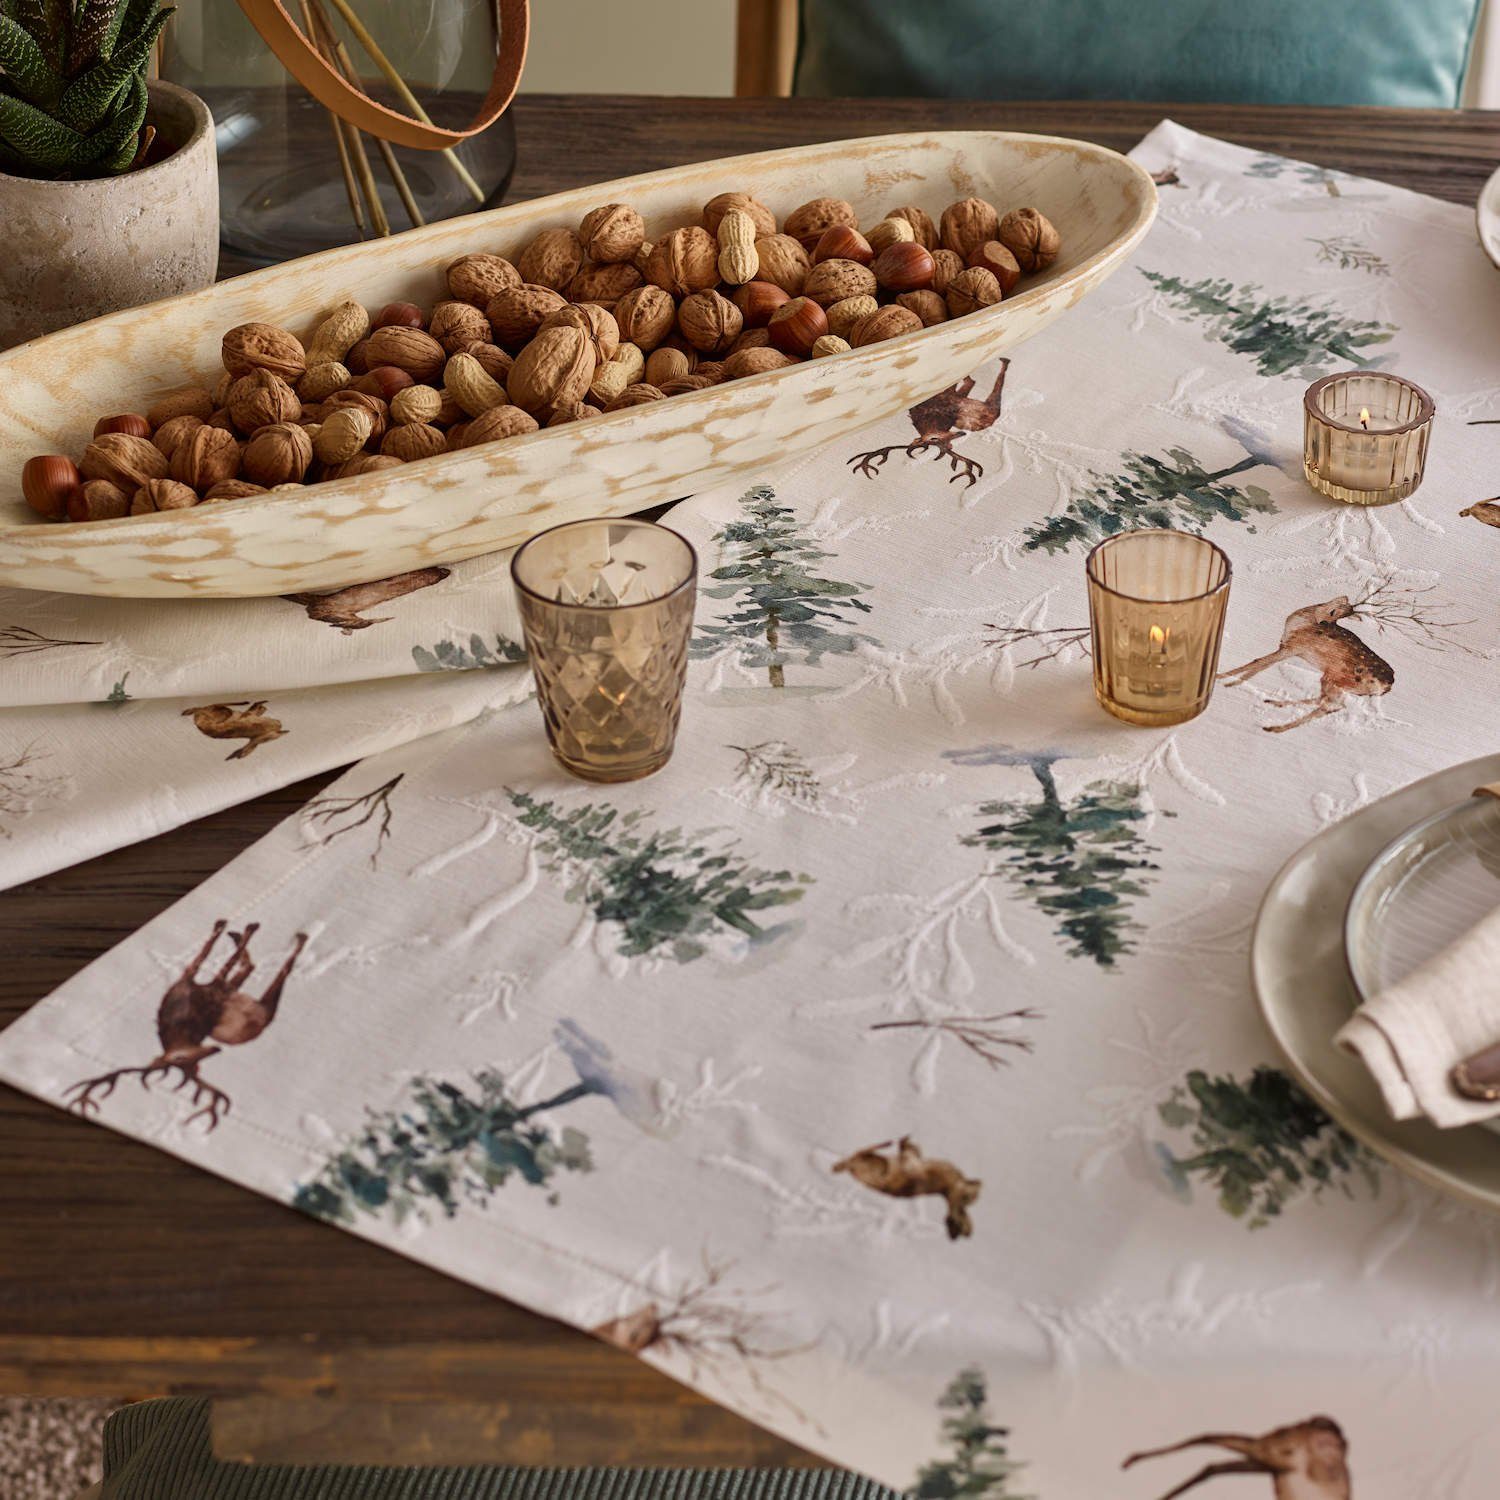 Skadi cm 35x50 x Herbst table 2 Weihnachten, + Wunderschönes Platzset, Tischset home sander